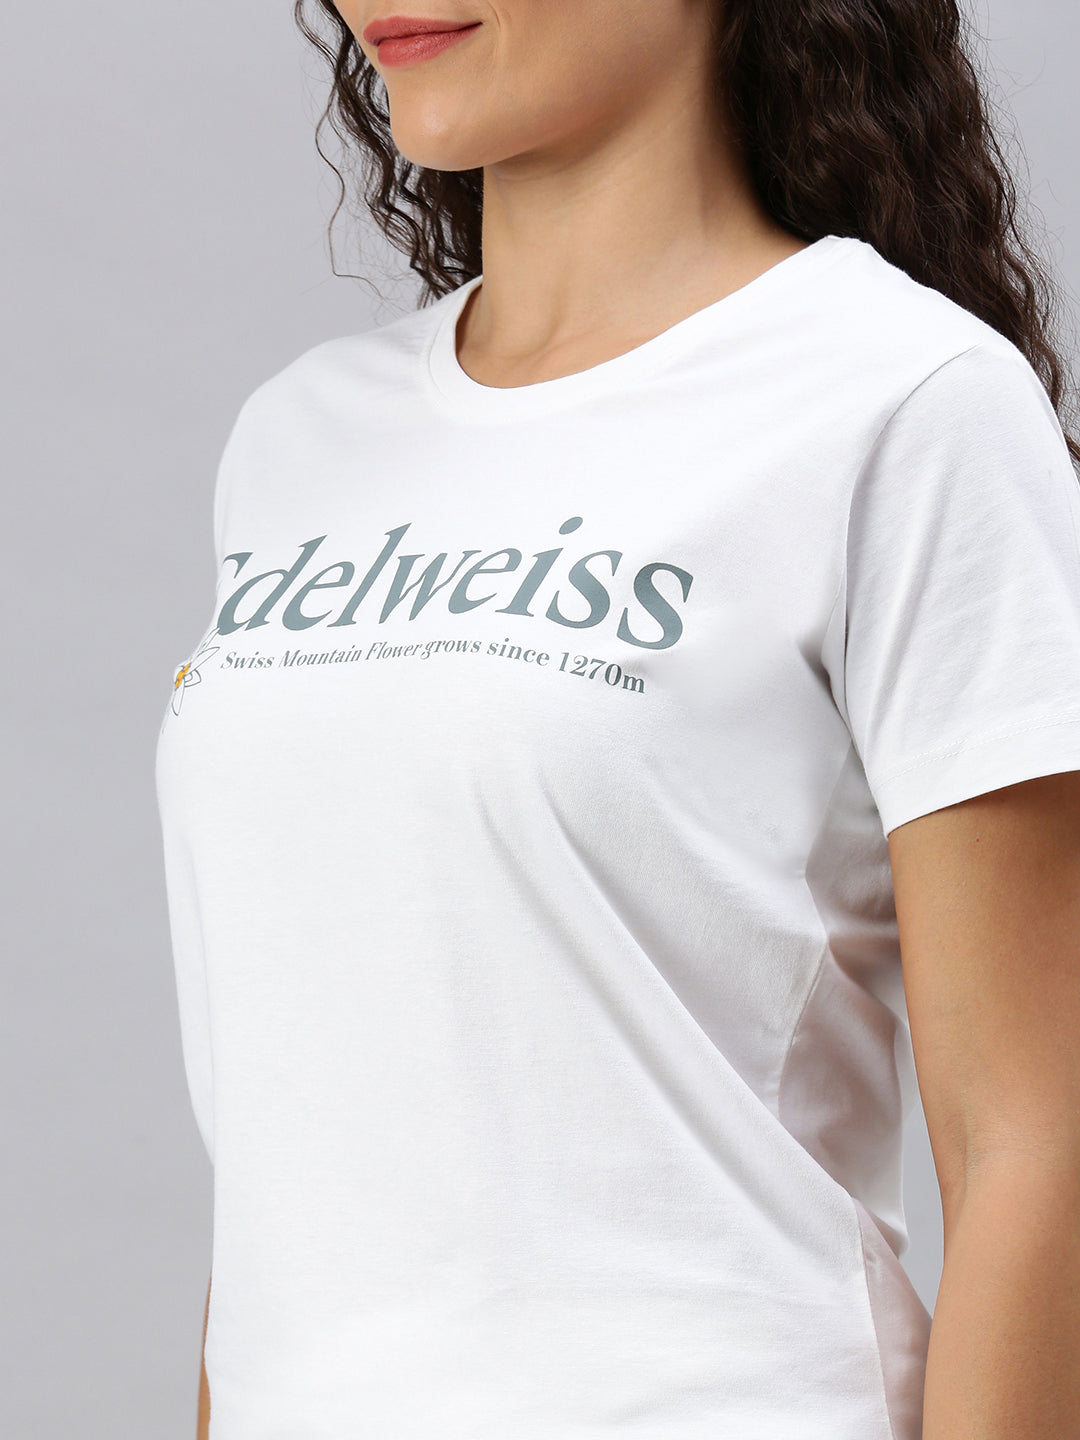 Edelweiss T-Shirt Women - 2085